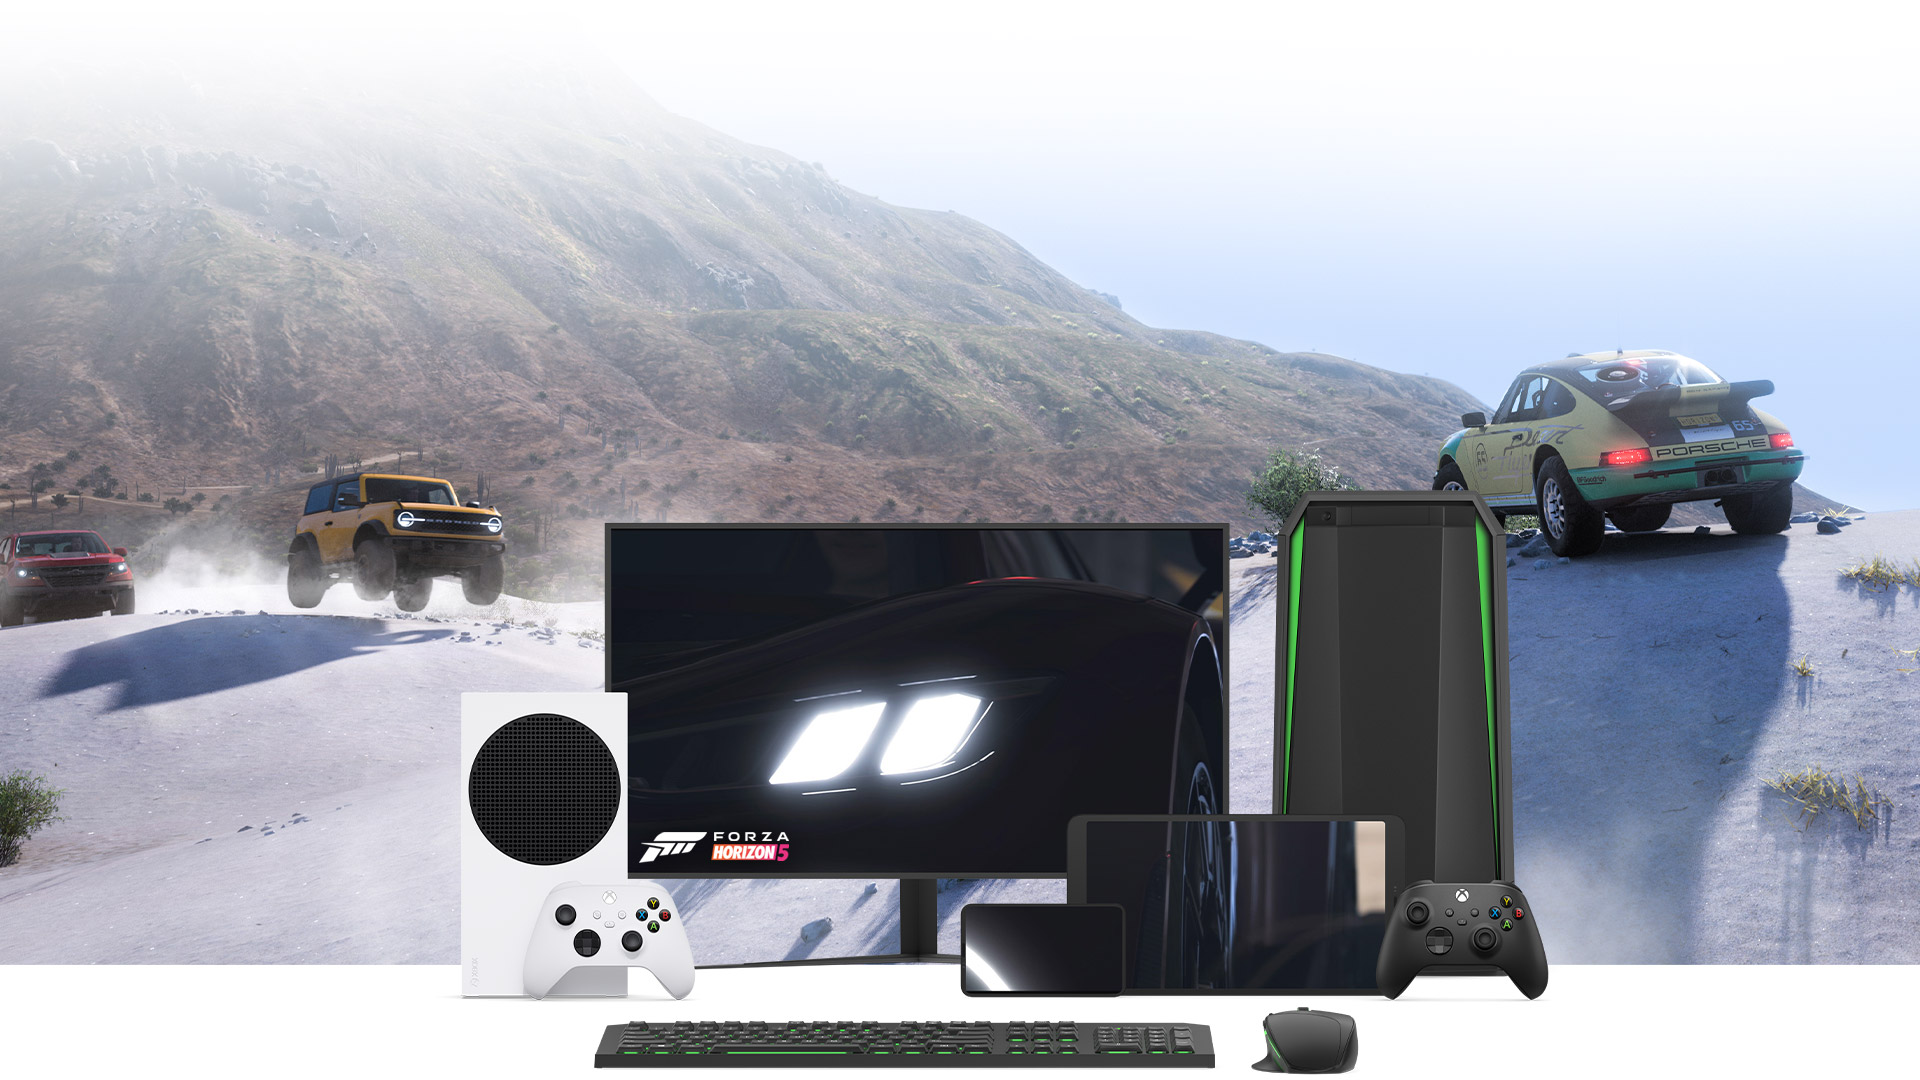 Több jármű áll egy homokdűne tetején, miközben a Forza Horizon 5 jelenetei láthatók a tévéképernyőn.